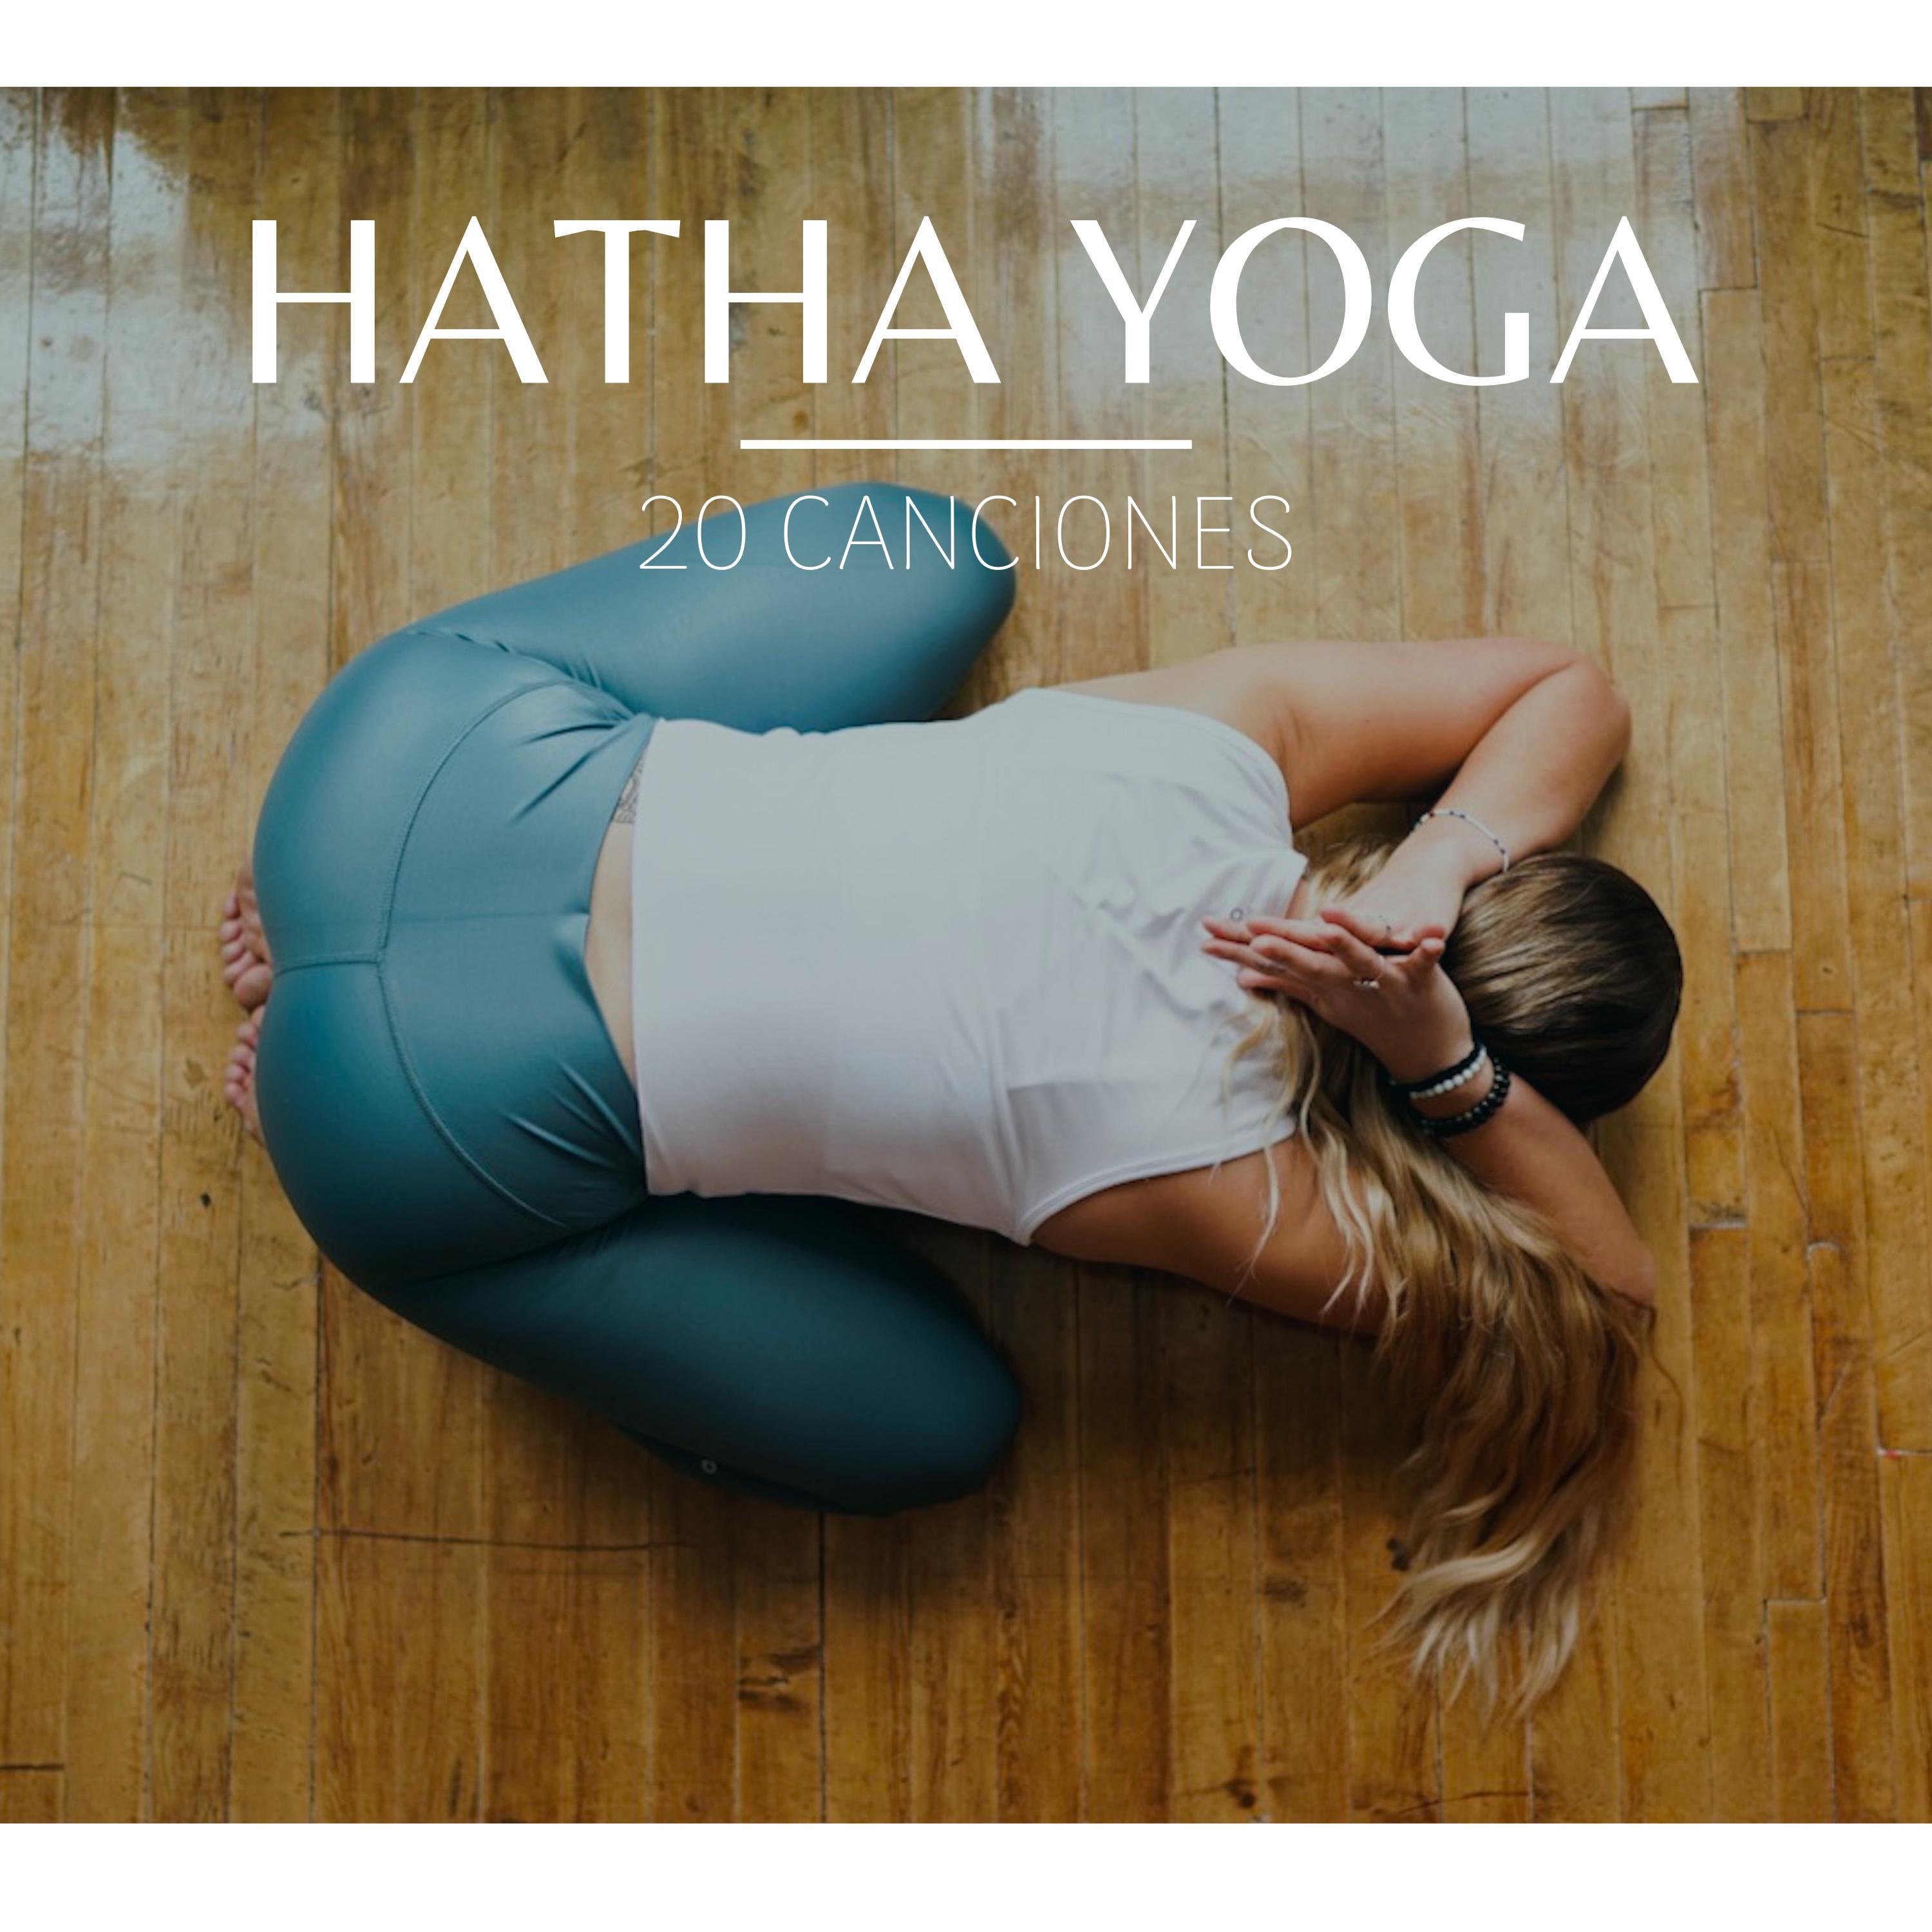 Hatha Yoga: 20 Canciones  Posiciones y Ejercicios Yoga, Relajacio n con Sonidos de la Naturaleza